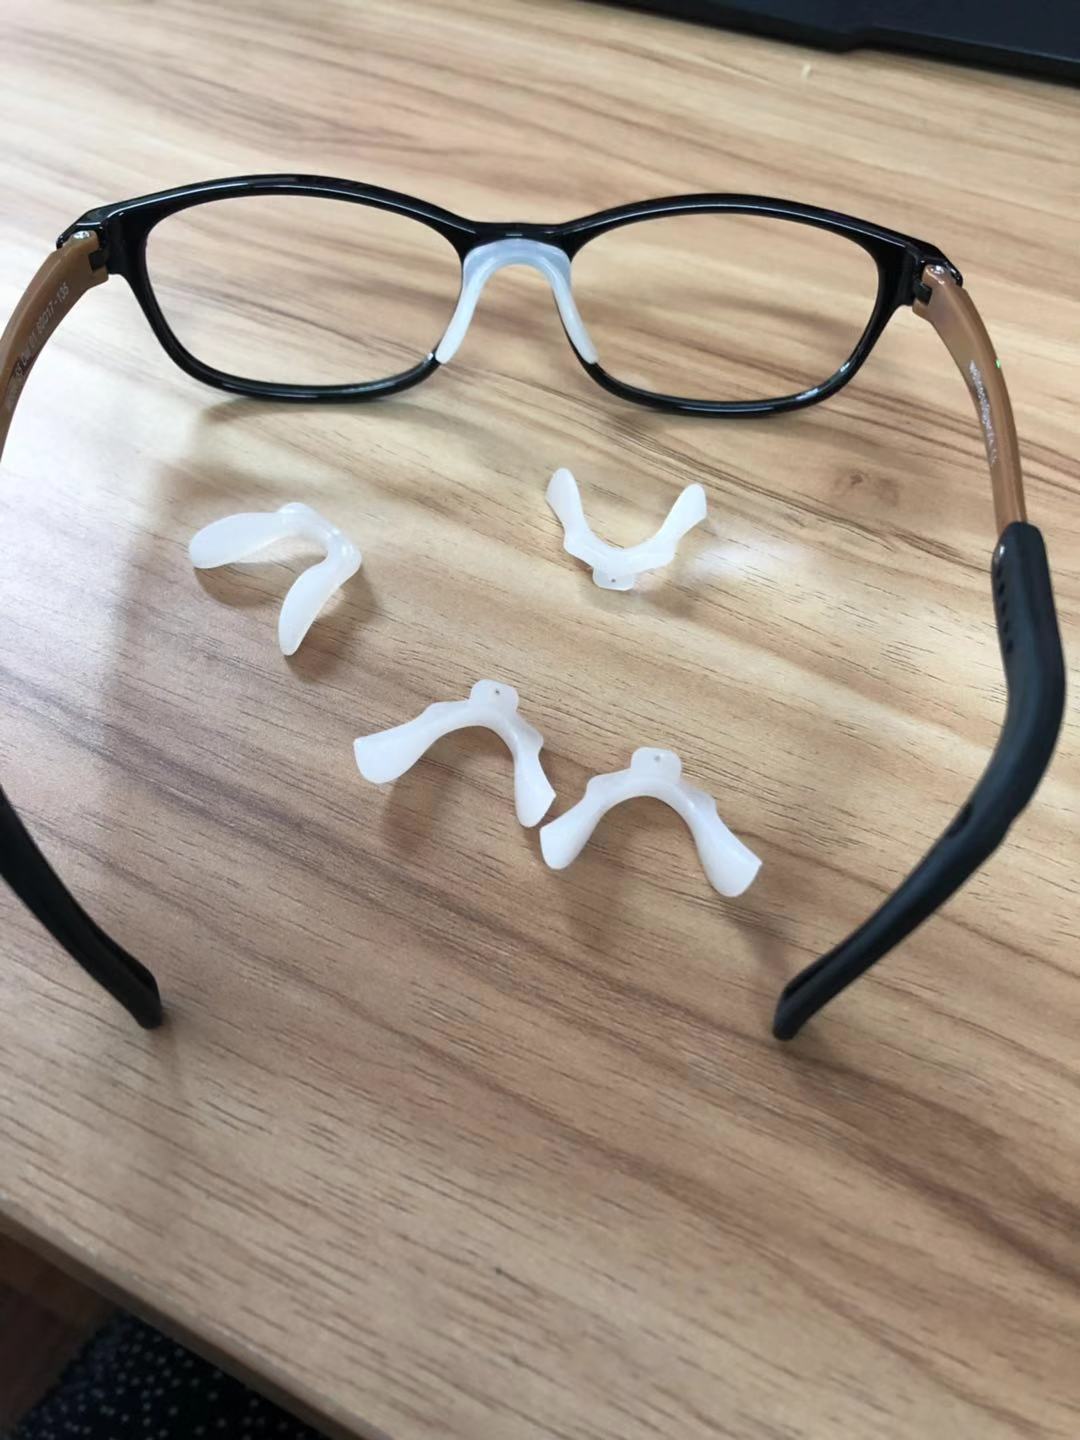 【瑞轩商贸】自然莎纳米能量眼镜 55号小学生眼镜鼻托/螺丝